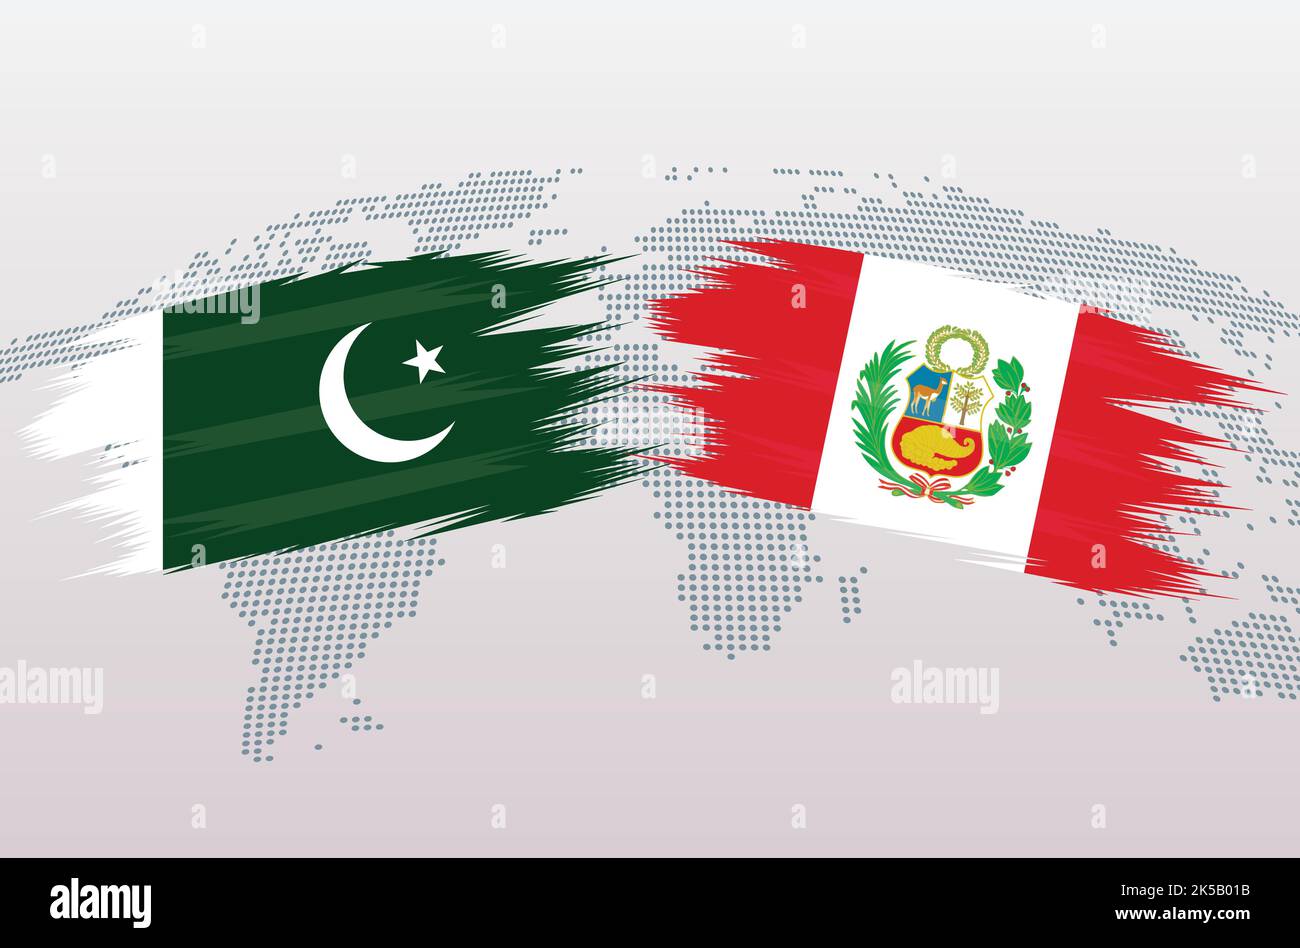 Bandiere Pakistan vs PERÙ. Bandiere della Repubblica islamica del Pakistan vs PERÙ, isolate su sfondo grigio della mappa del mondo. Illustrazione vettoriale. Illustrazione Vettoriale